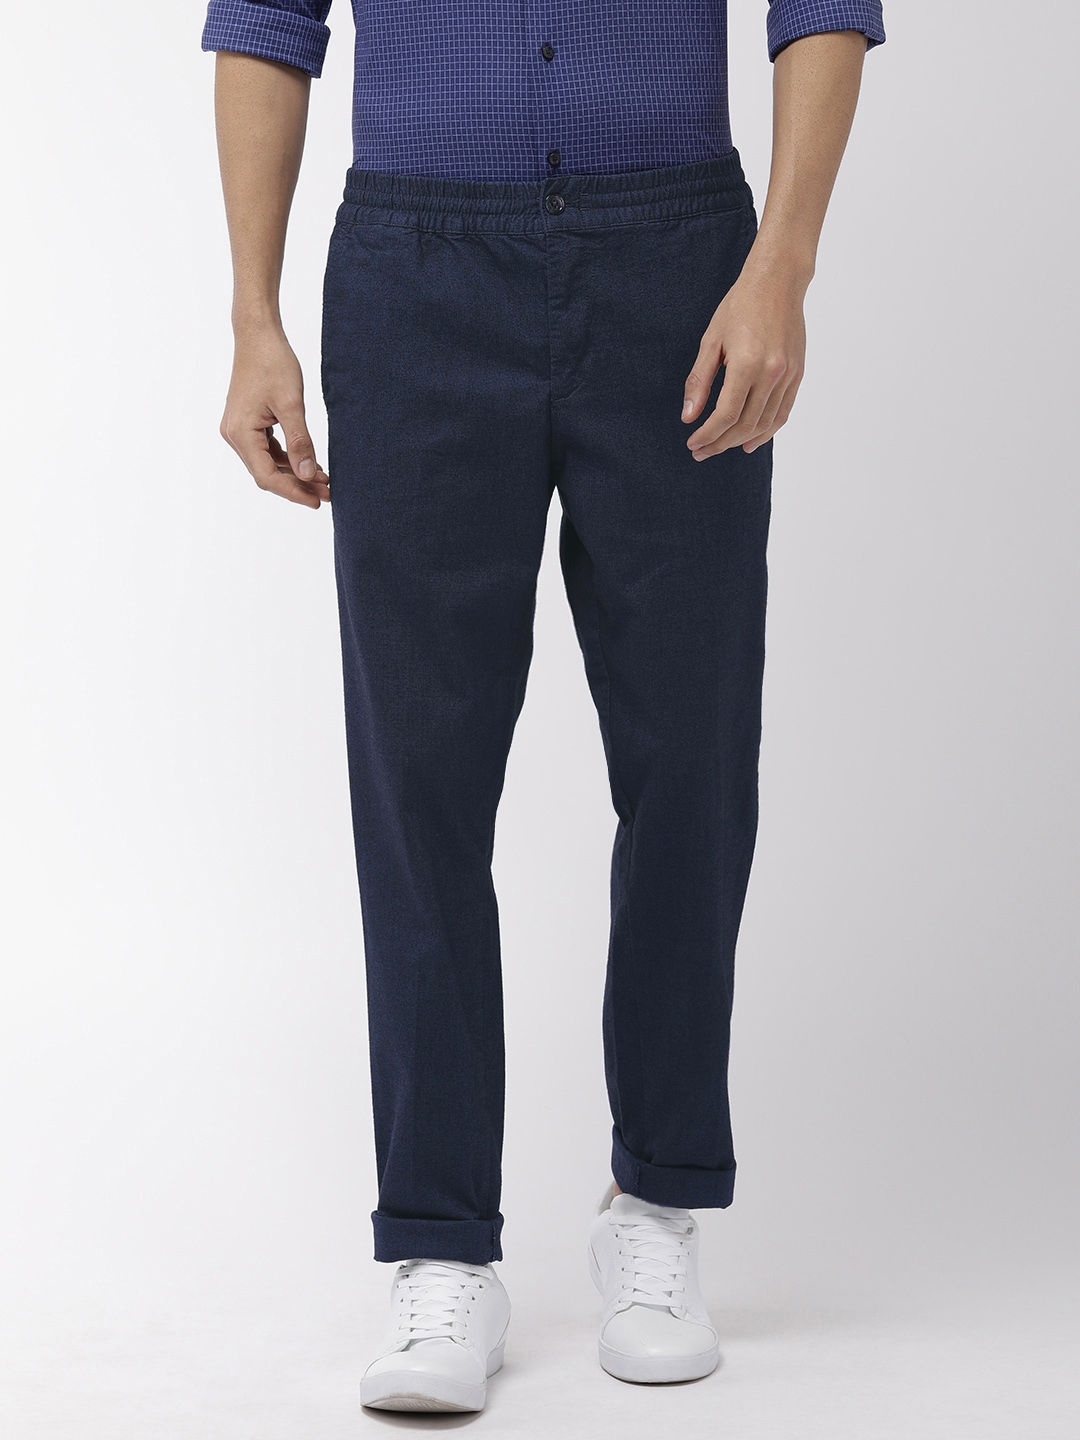 Buy Tommy Hilfiger Men Navy Blue Regular Fit Solid Regular Trousers ...